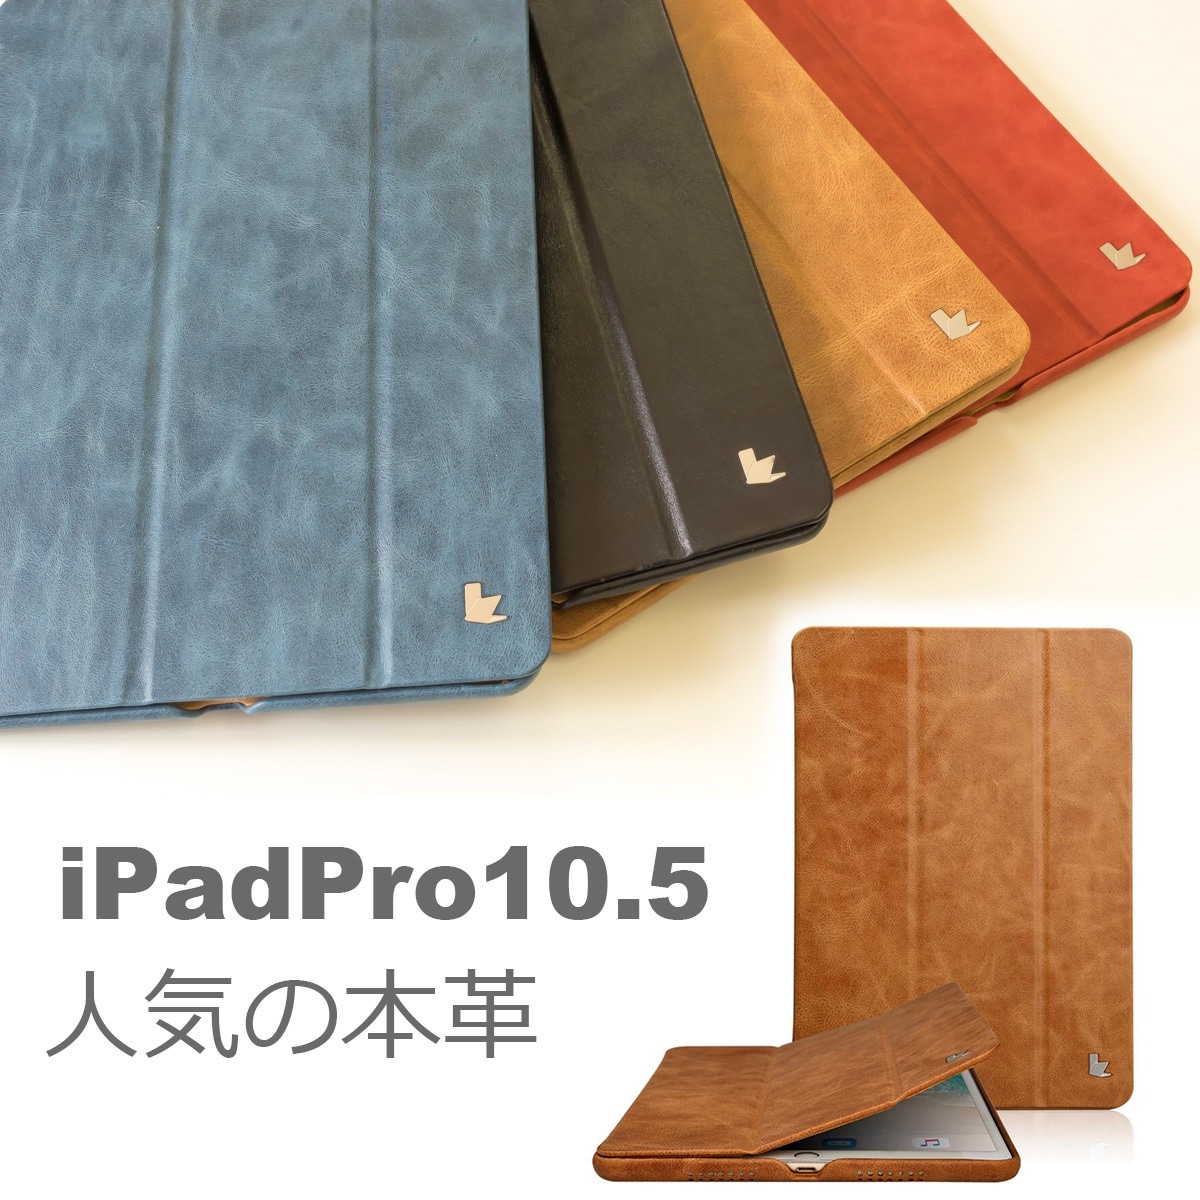 【超目玉】 Pro ipad 銀付本革送料無料カバー カバーJS-PRO-20A 10.5インチ Pro iPad 正規品JISONCASE ケース レザー オートスリープ 本革ケース タブレットPC用ケース